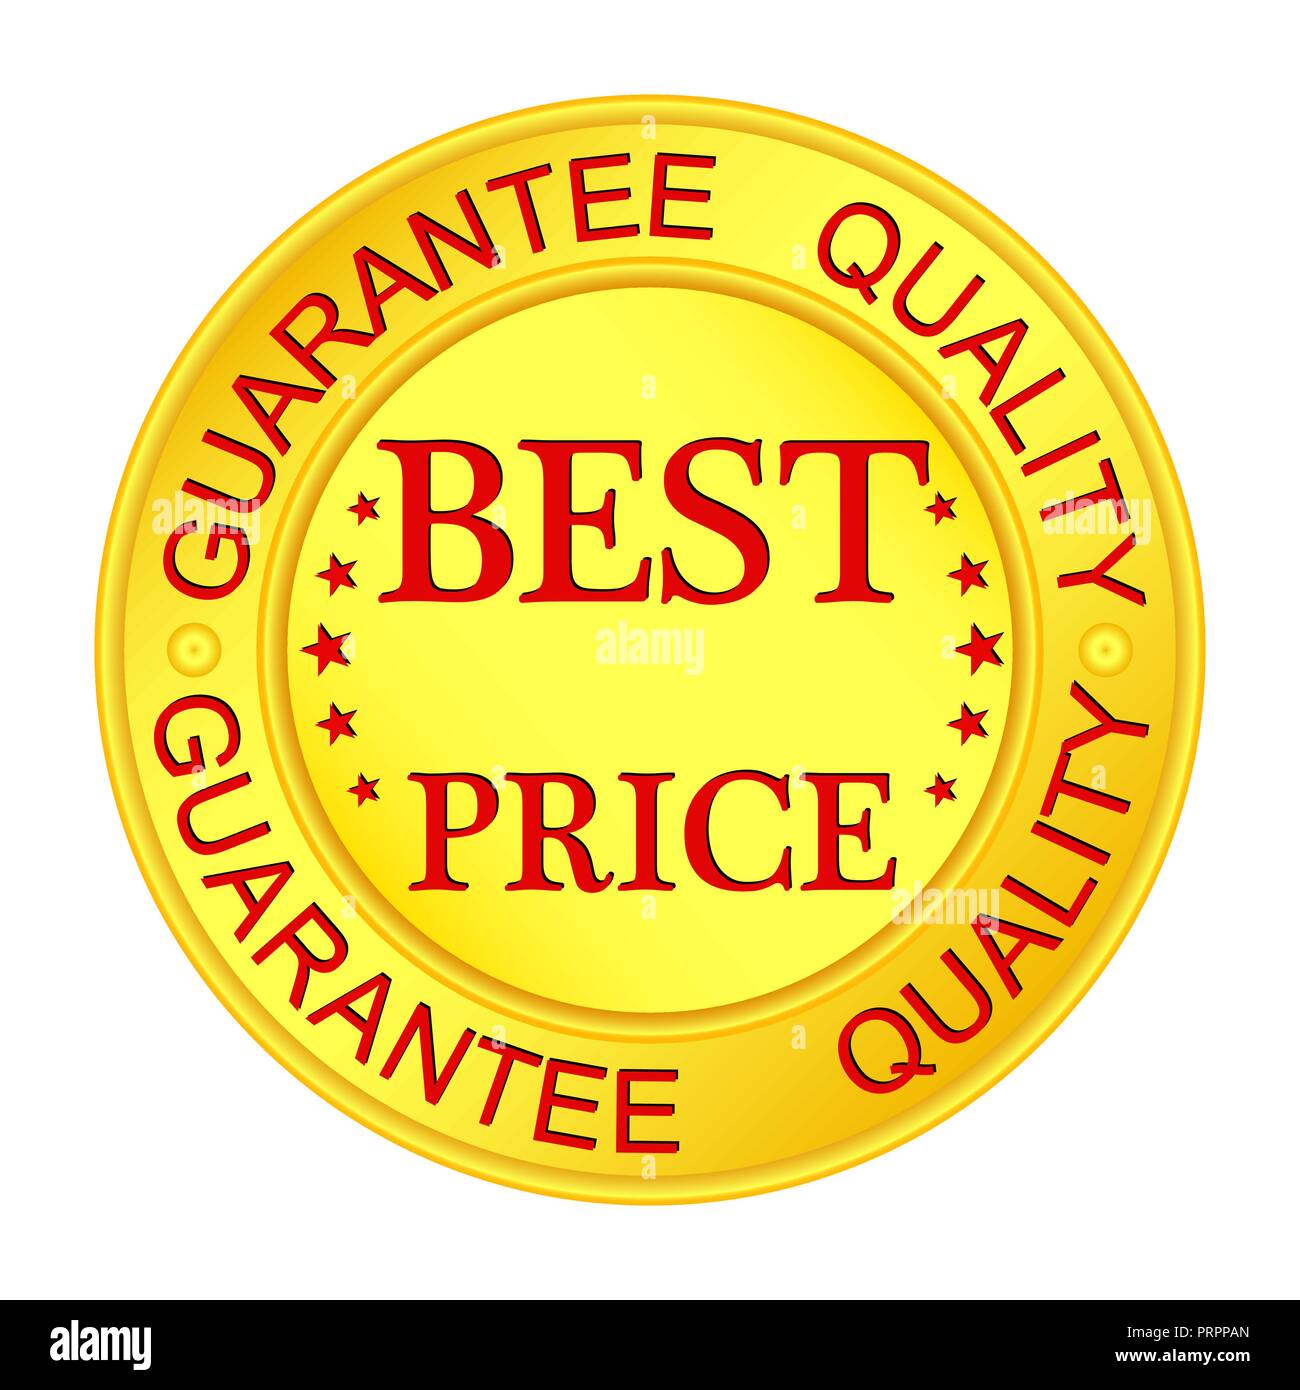 Medaglione in oro con iscrizione garantiscono qualità e miglior prezzo Illustrazione Vettoriale